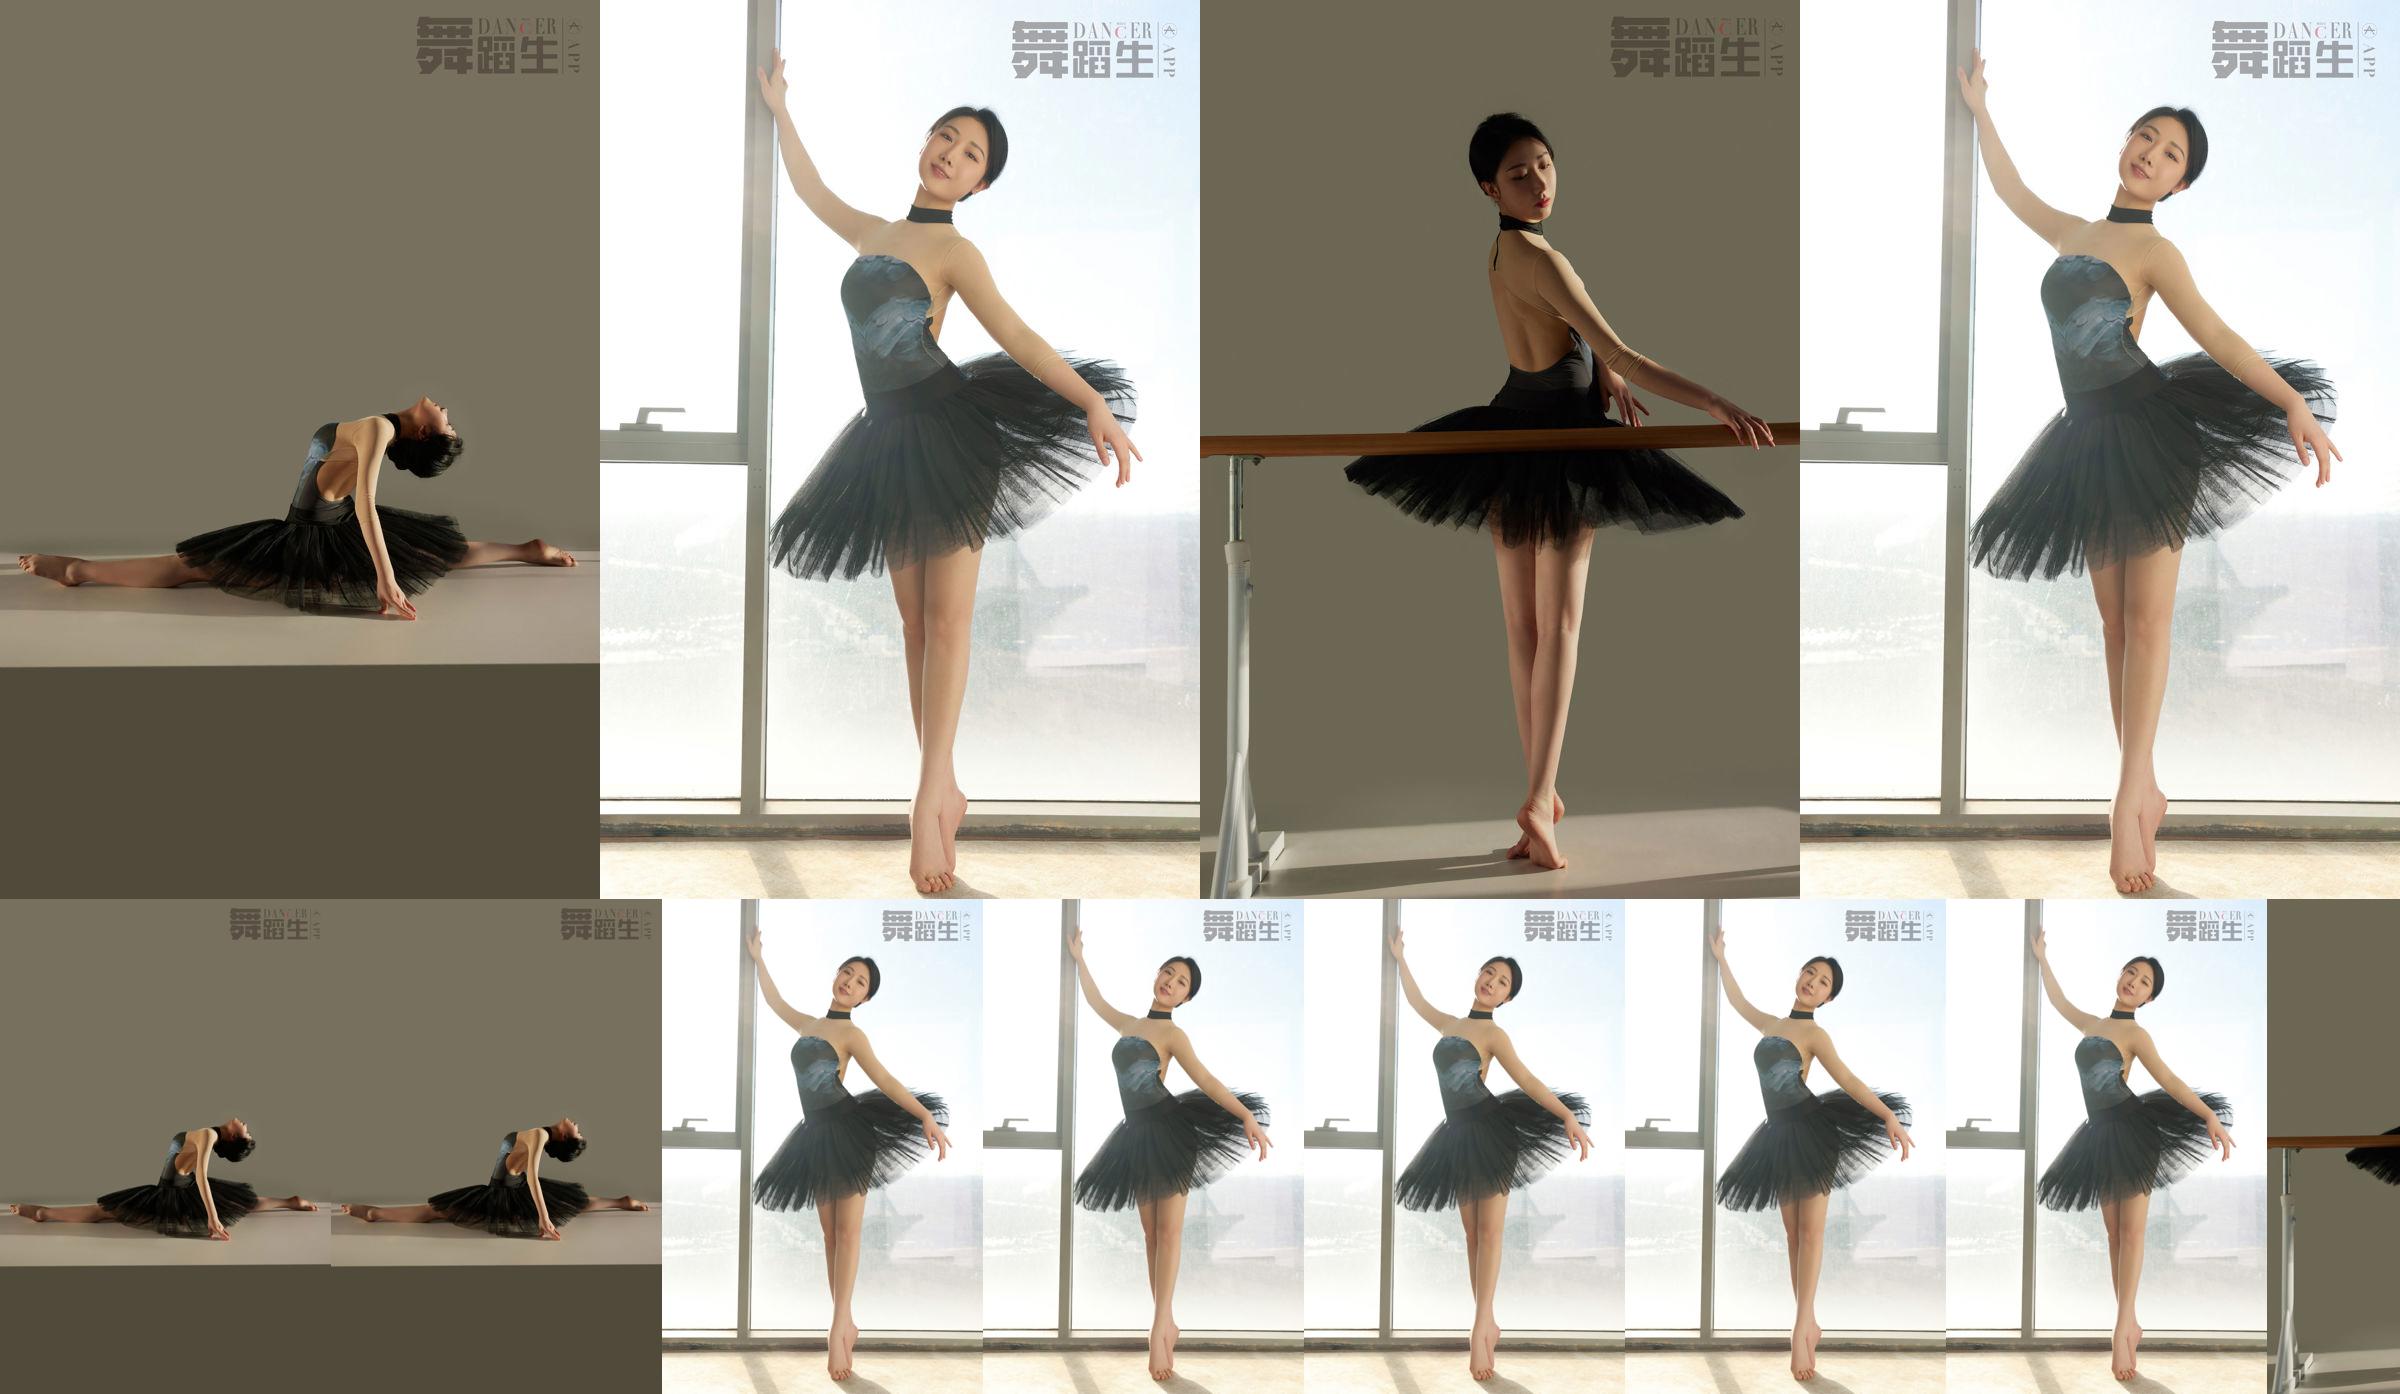 [Carrie Galli] Diario de un estudiante de danza 088 Xue Hui No.6b9c76 Página 4